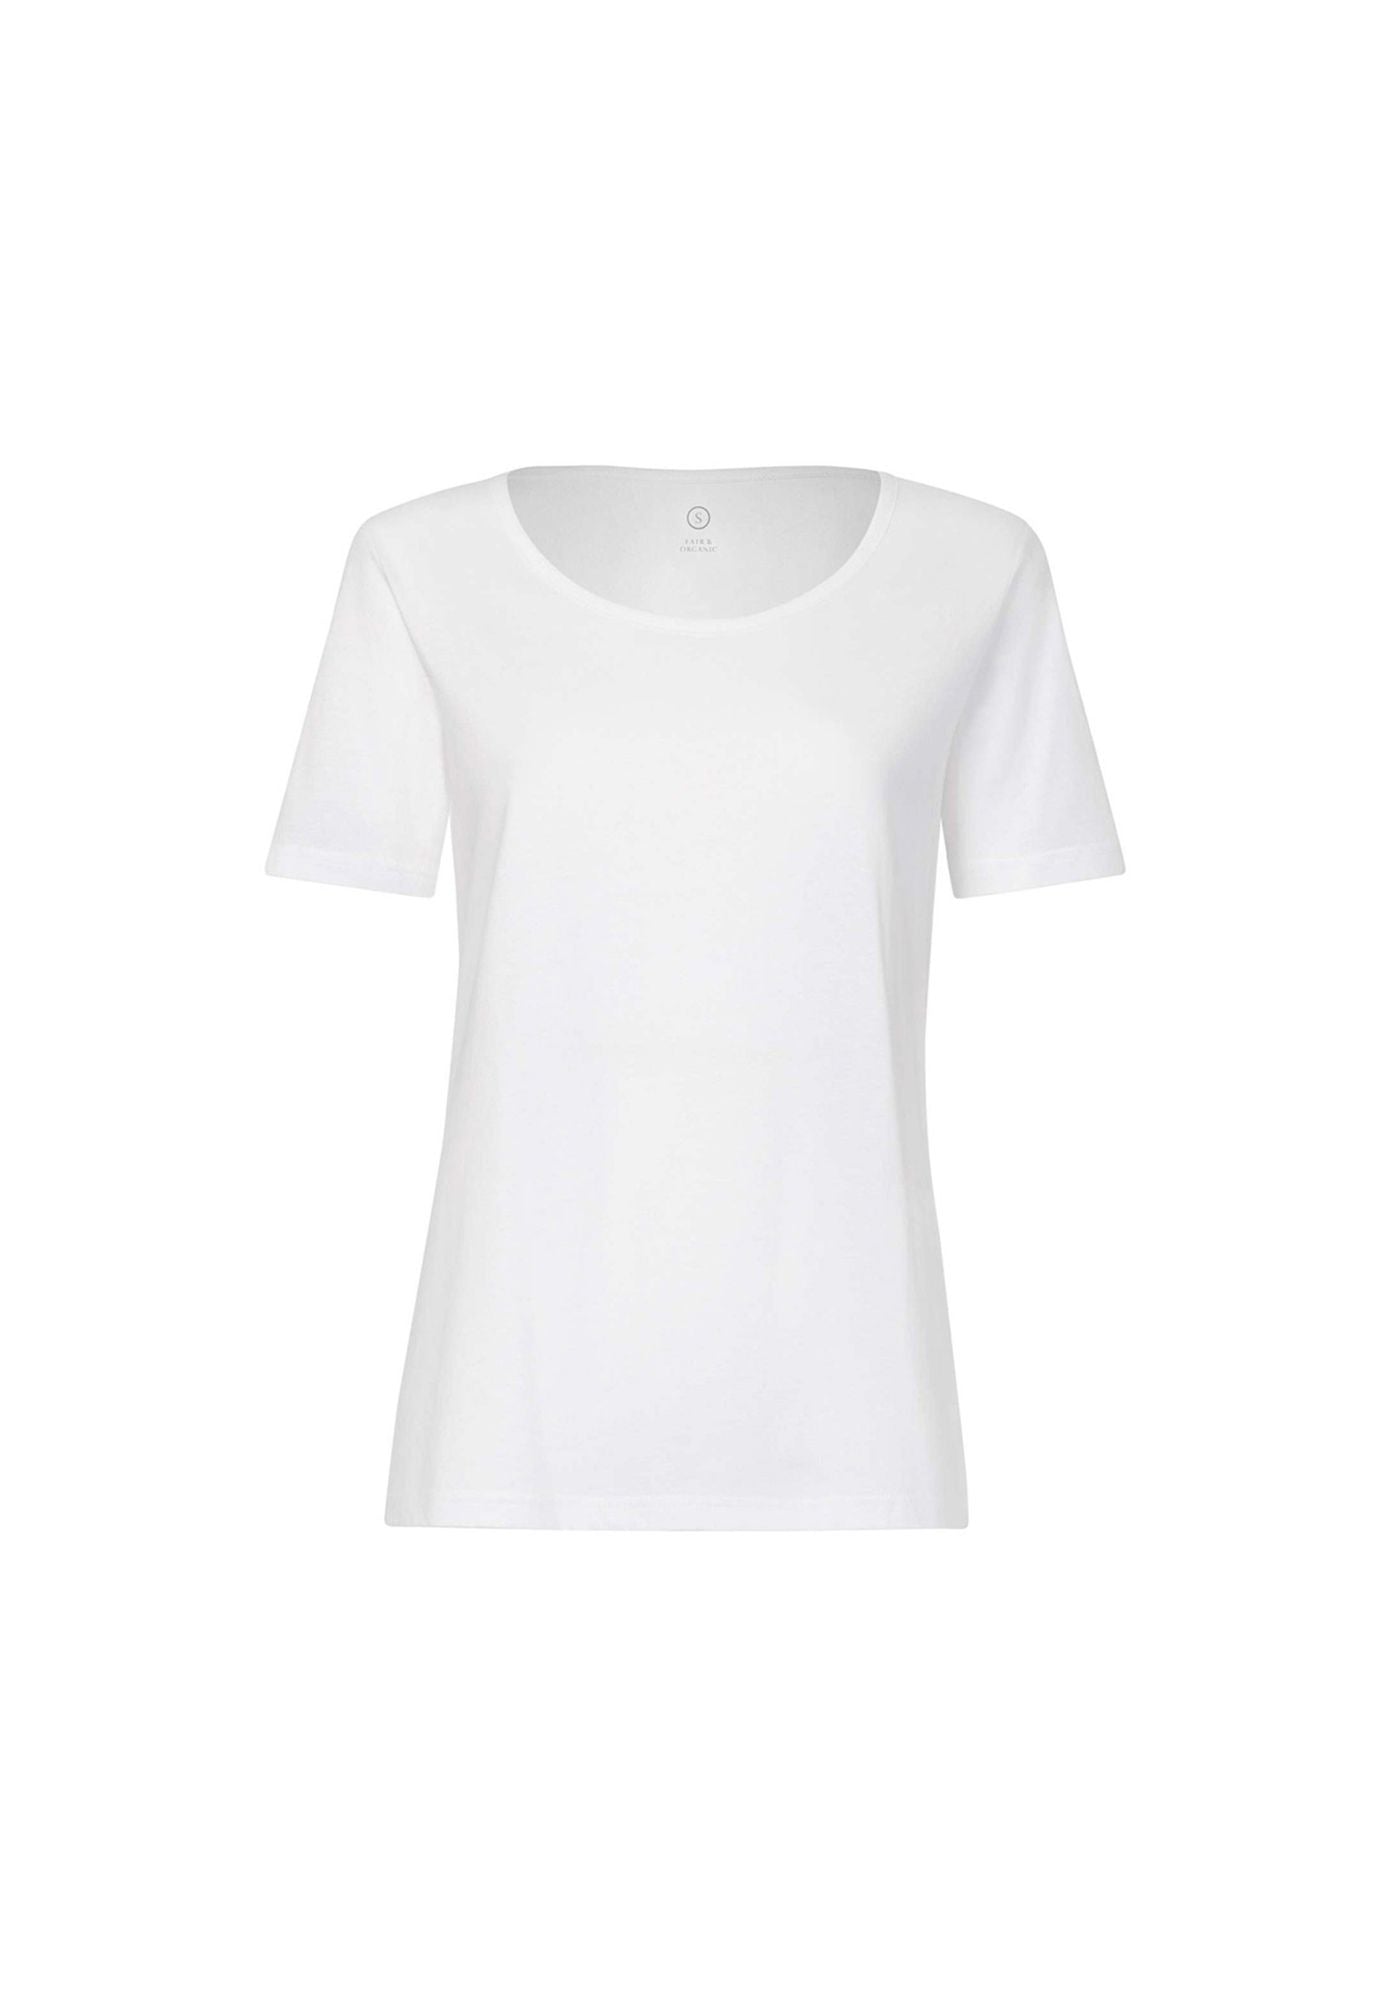 BTD64 T-Shirt White (GOTS)